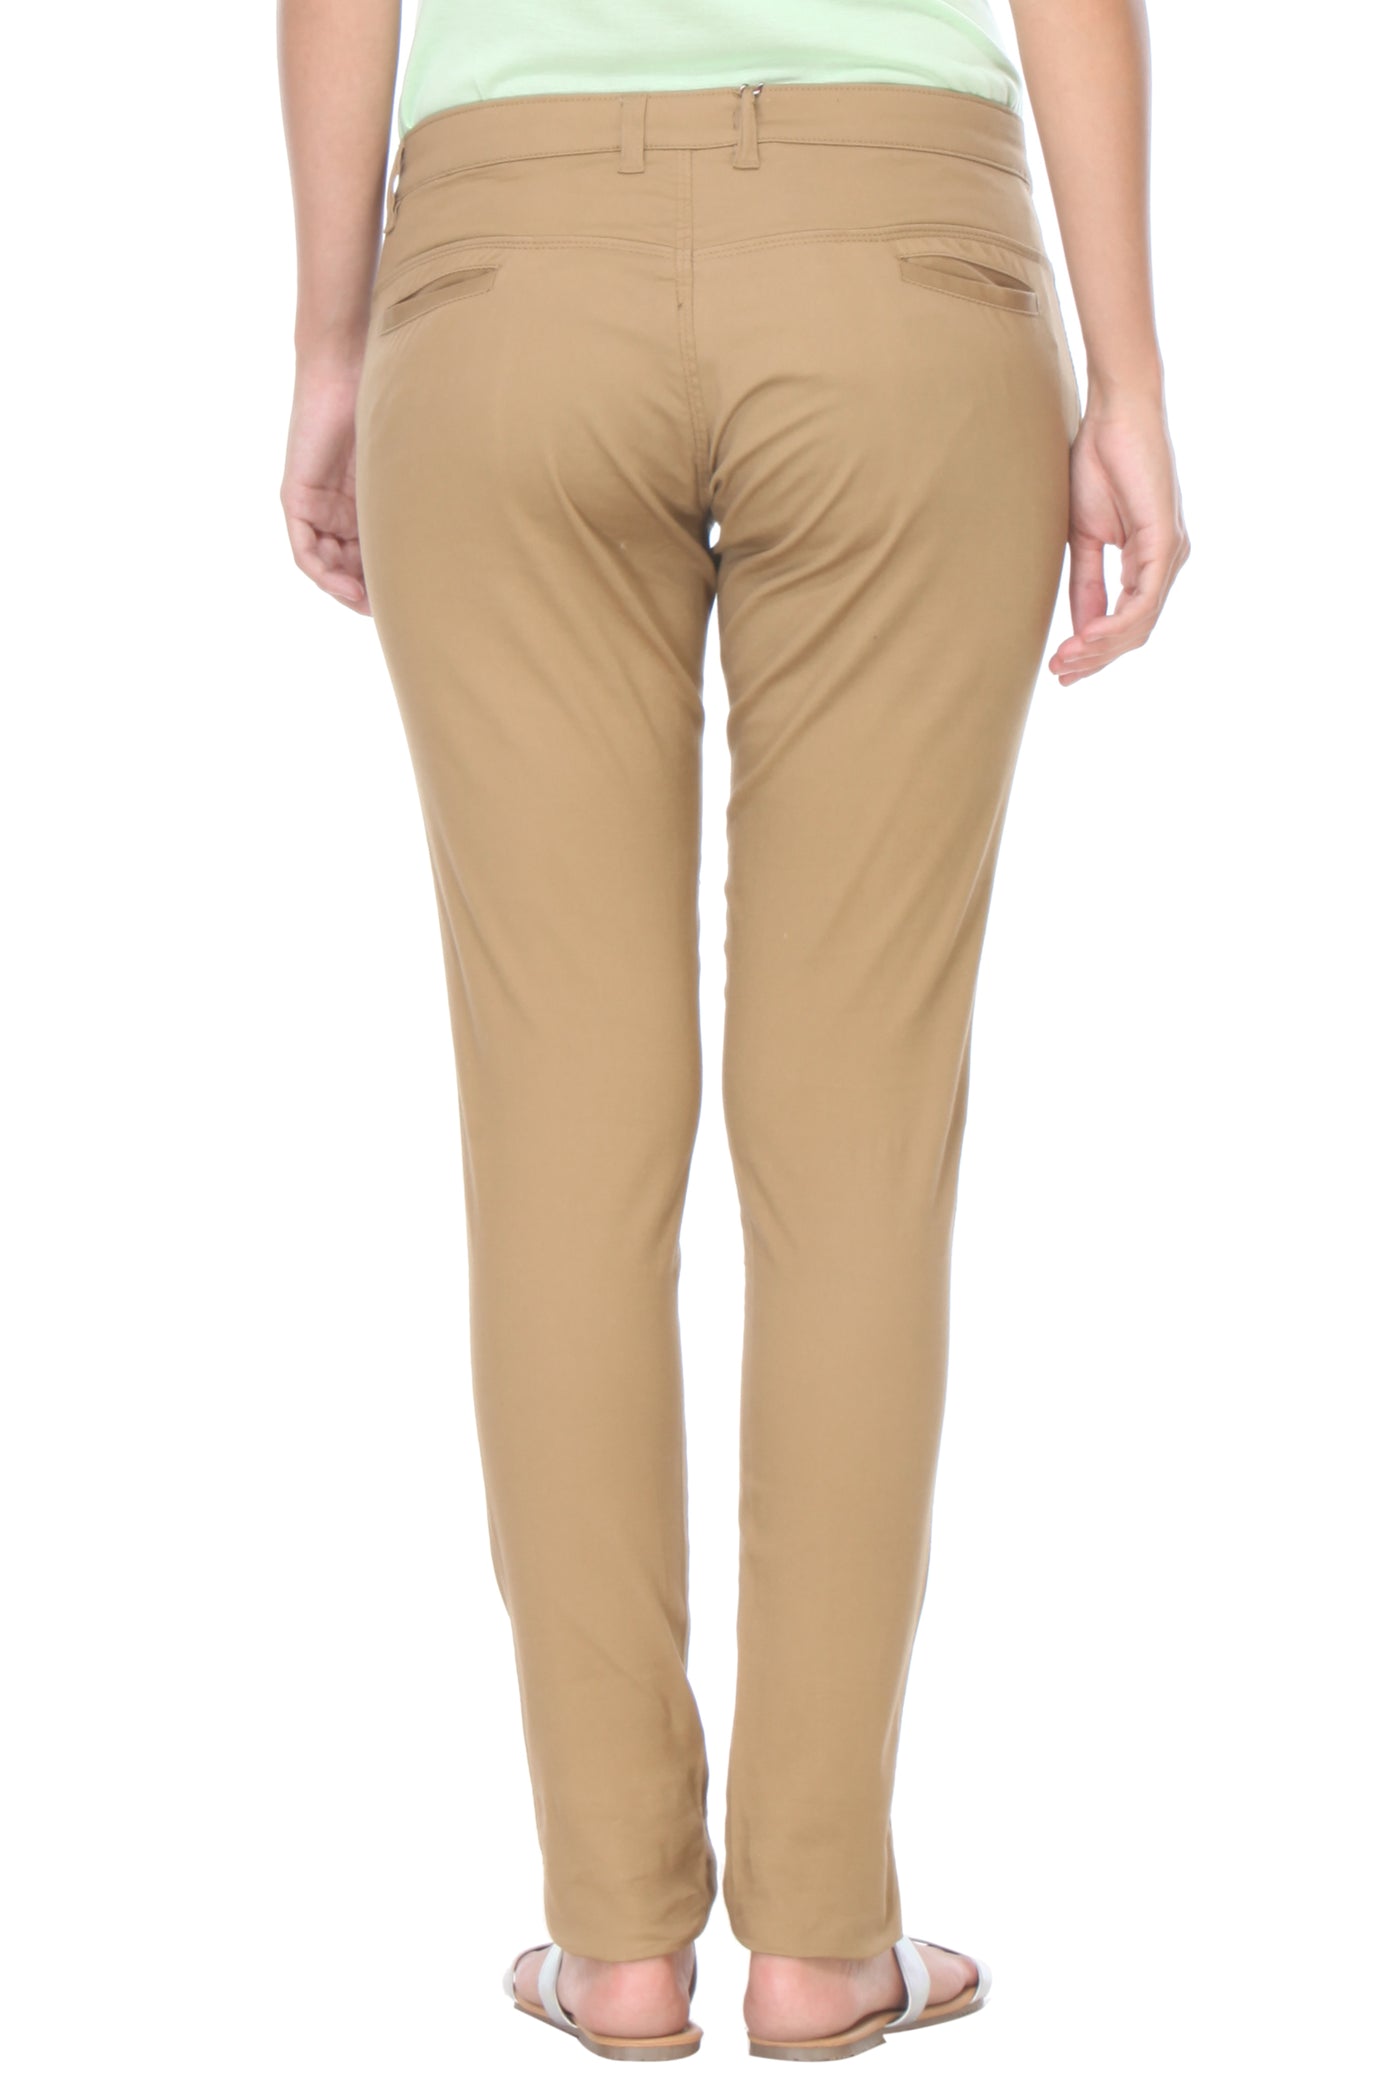 Beige Solid Trouser-Women Trousers-Crimsoune Club